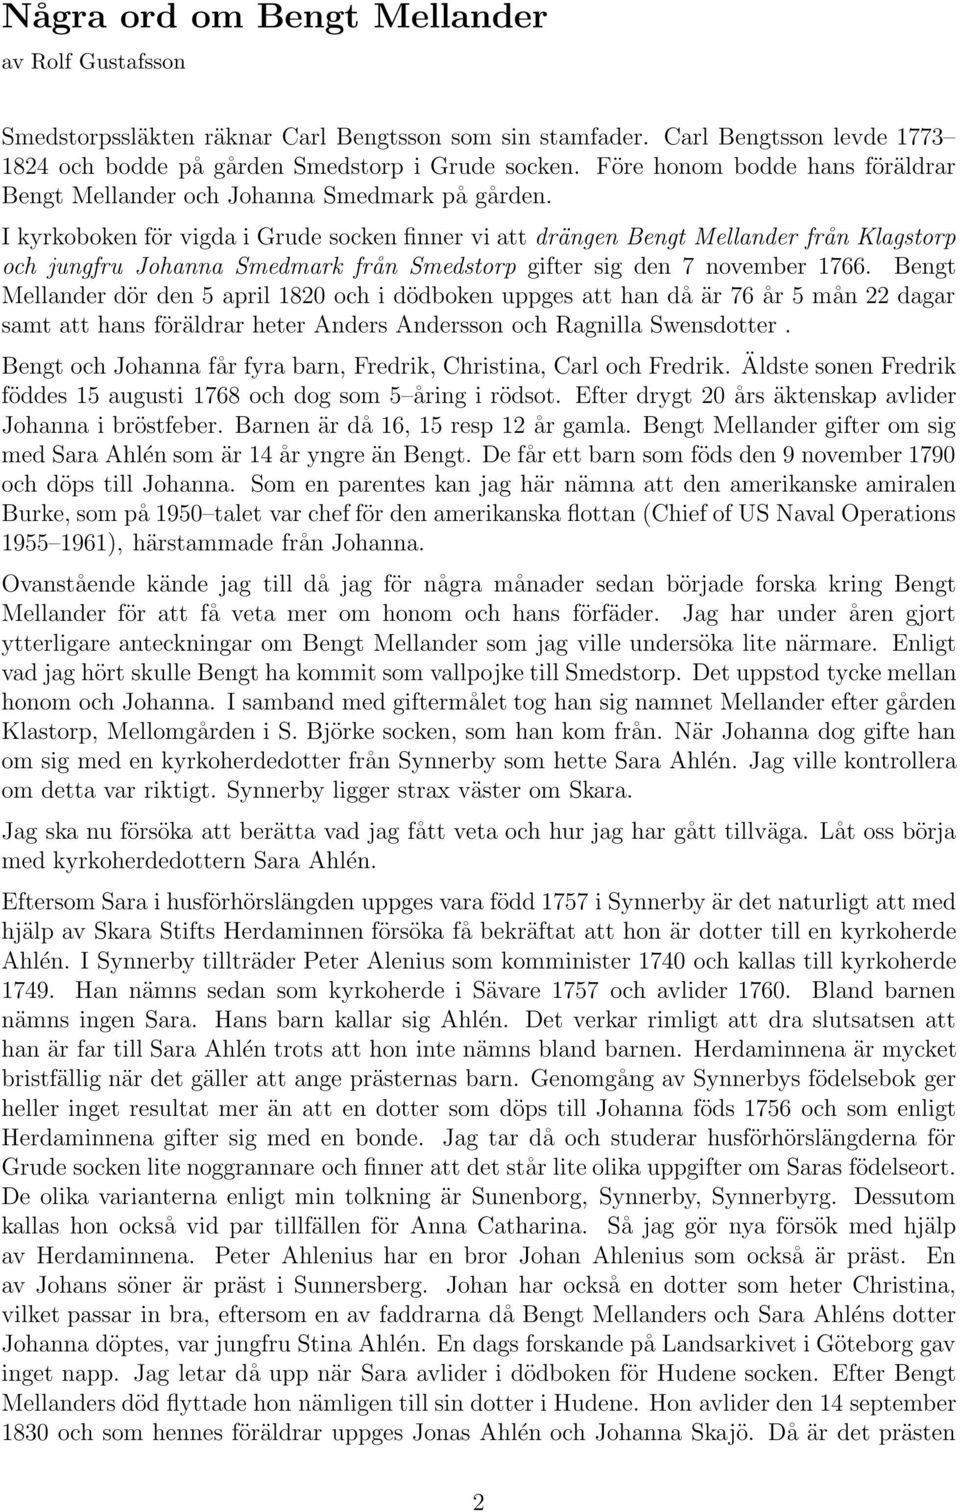 I kyrkoboken för vigda i Grude socken finner vi att drängen Bengt Mellander från Klagstorp och jungfru Johanna Smedmark från Smedstorp gifter sig den 7 november 1766.